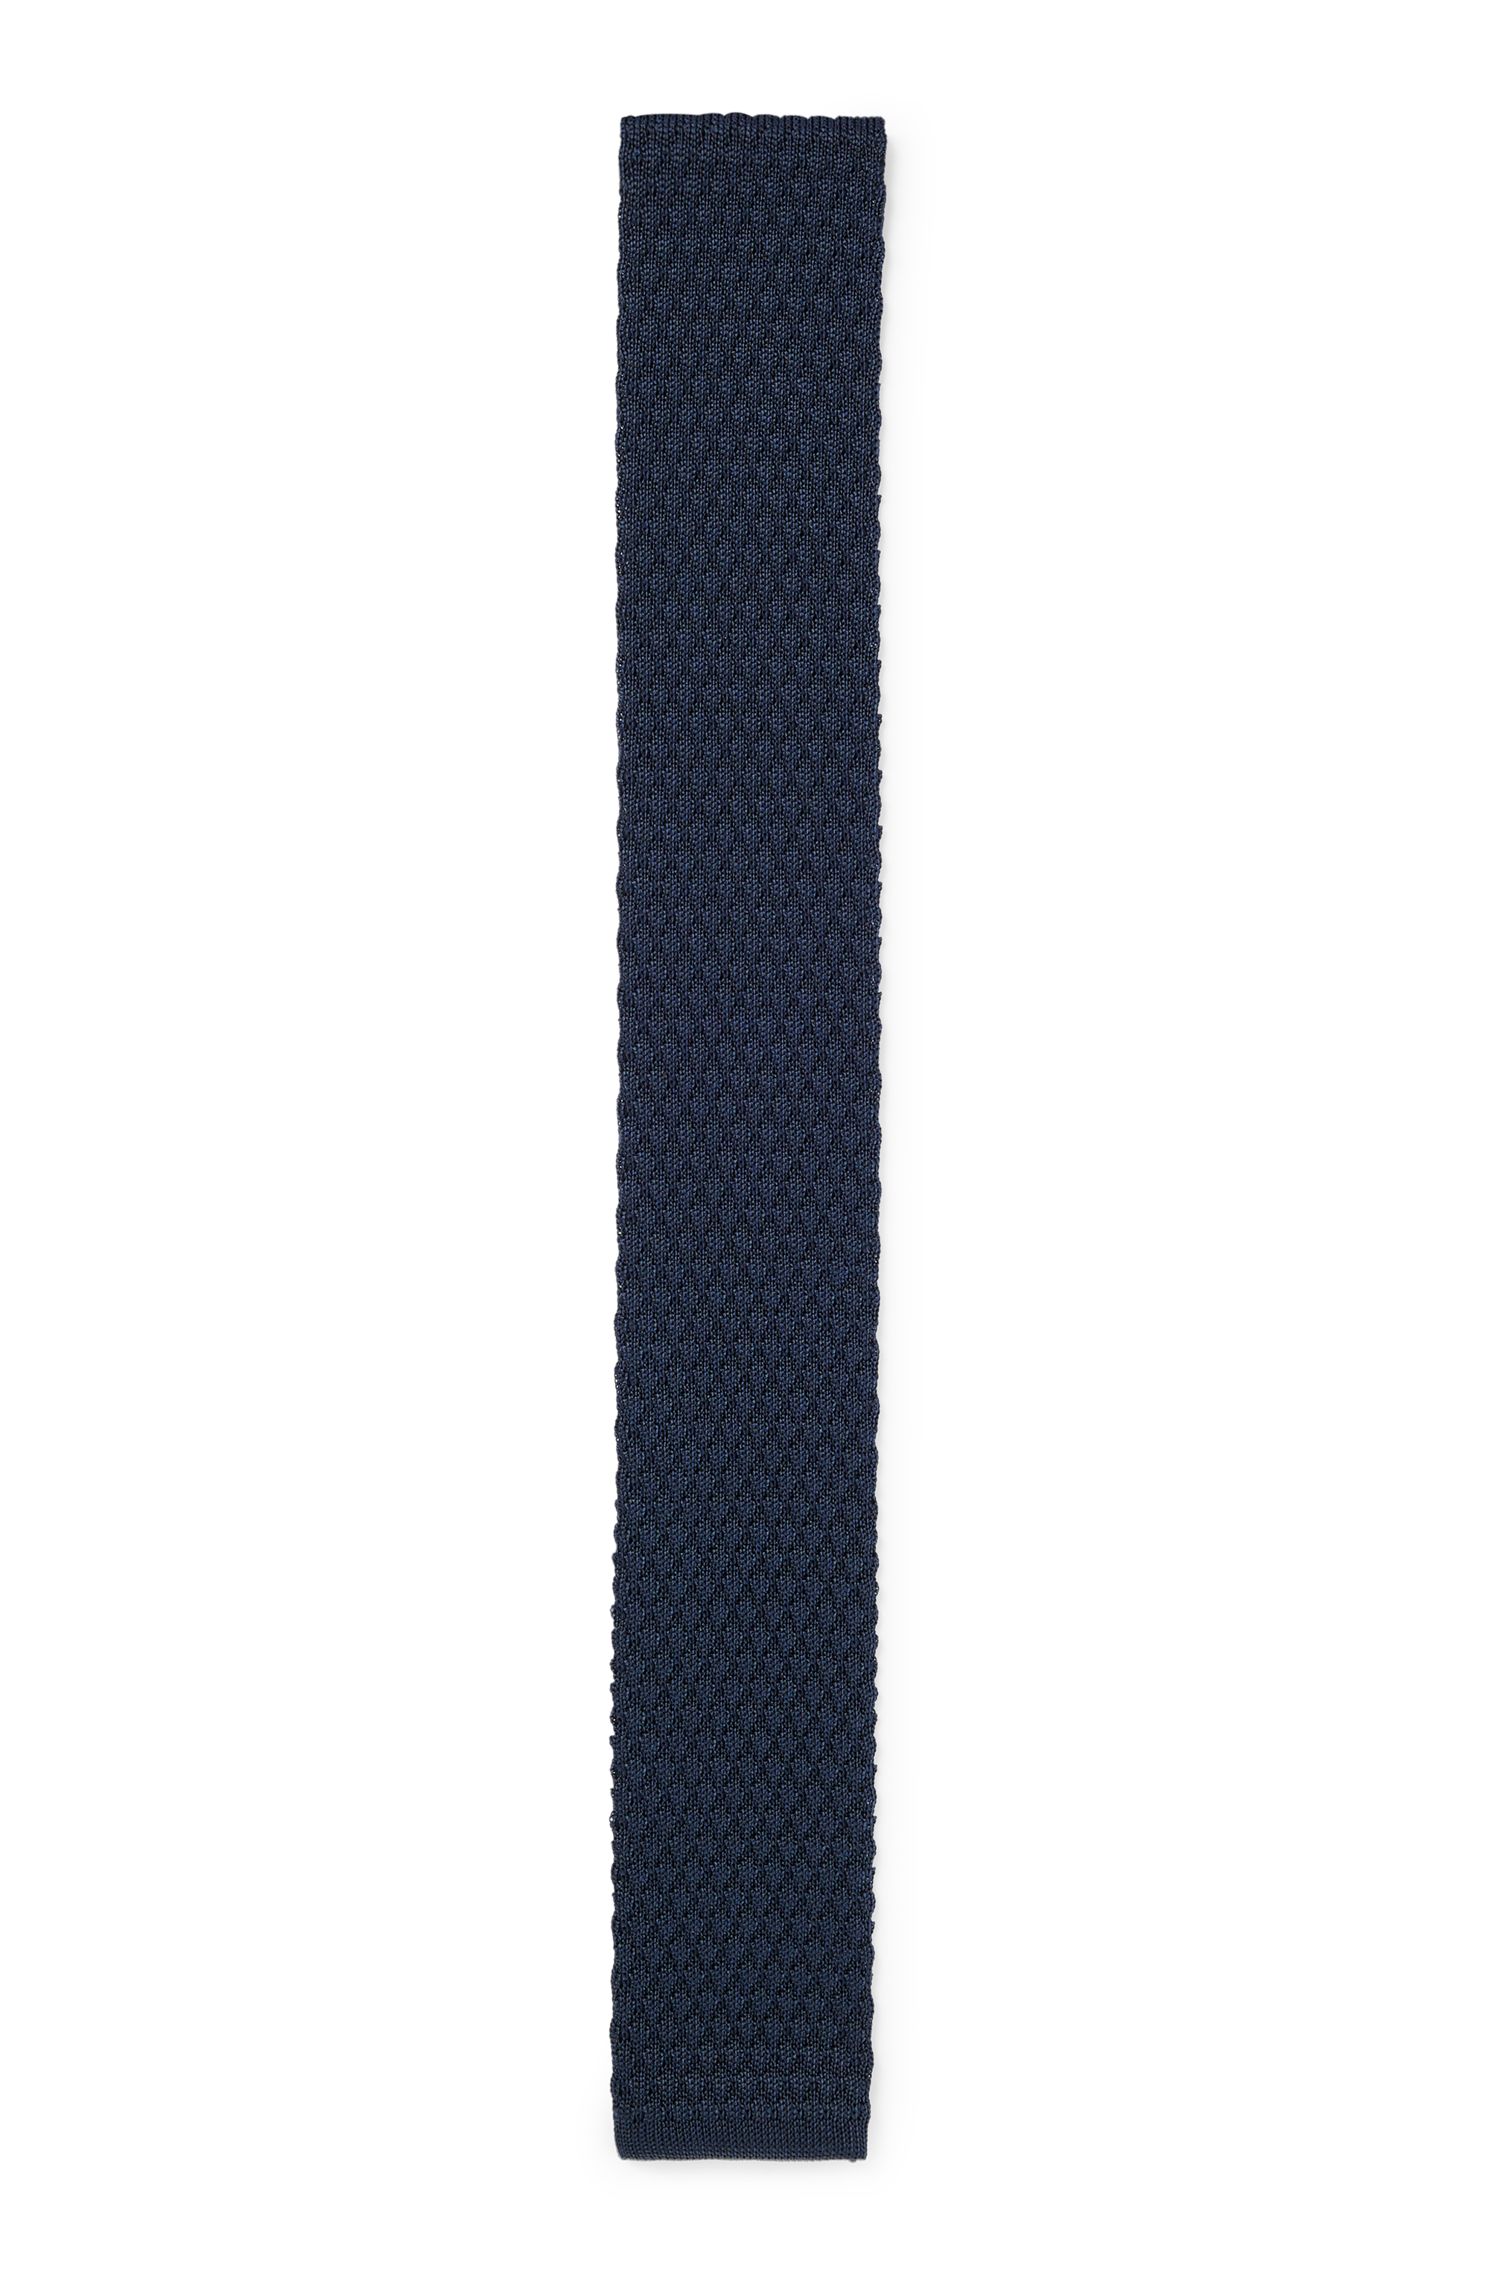 针织提花结构纯领带